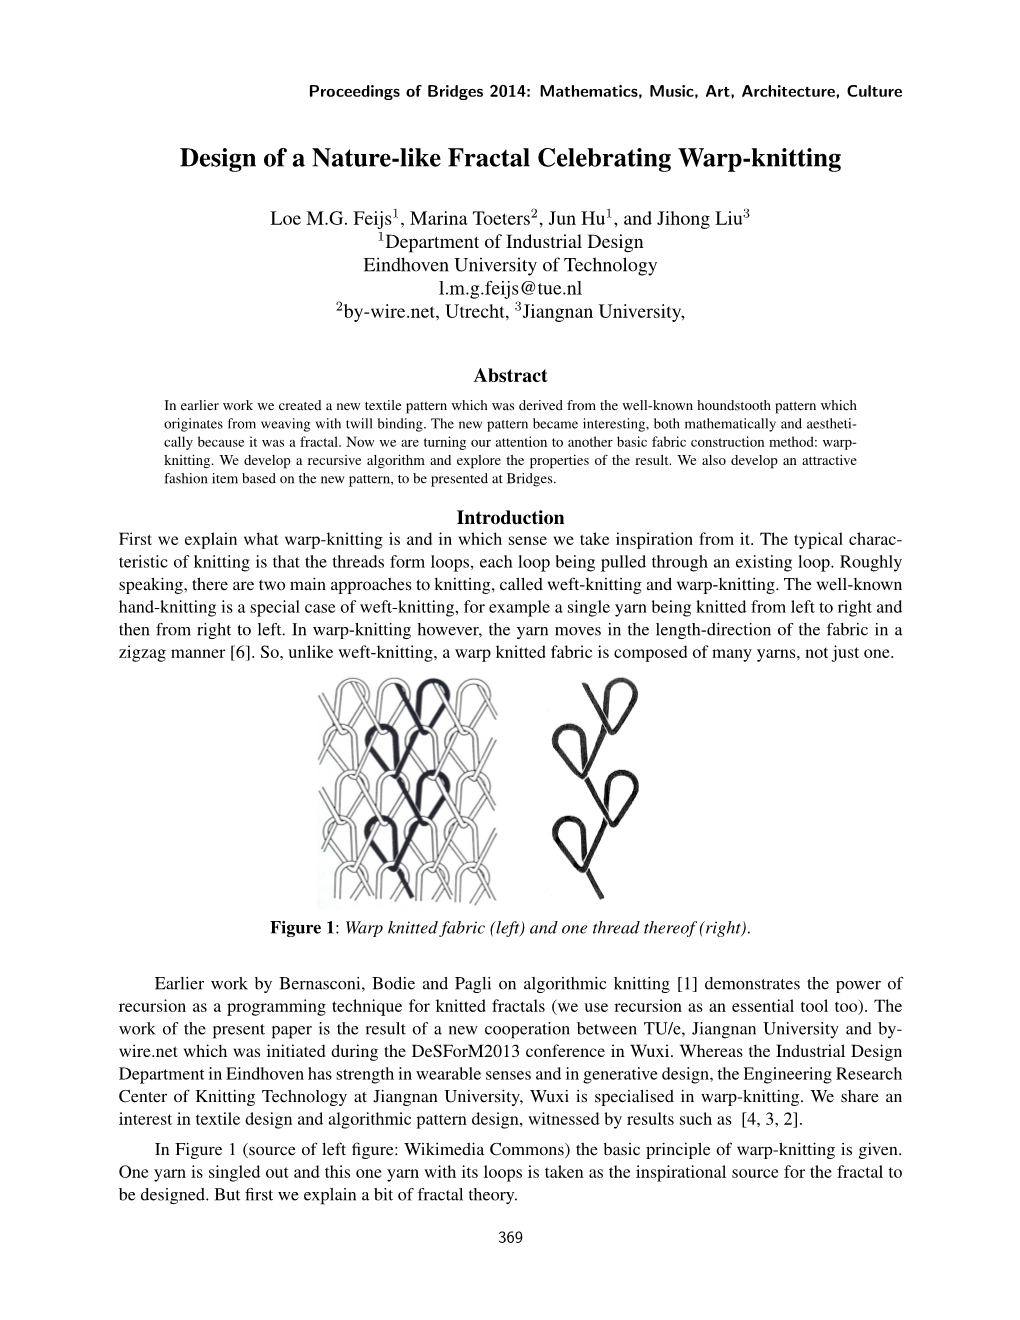 Design of a Nature-Like Fractal Celebrating Warp-Knitting